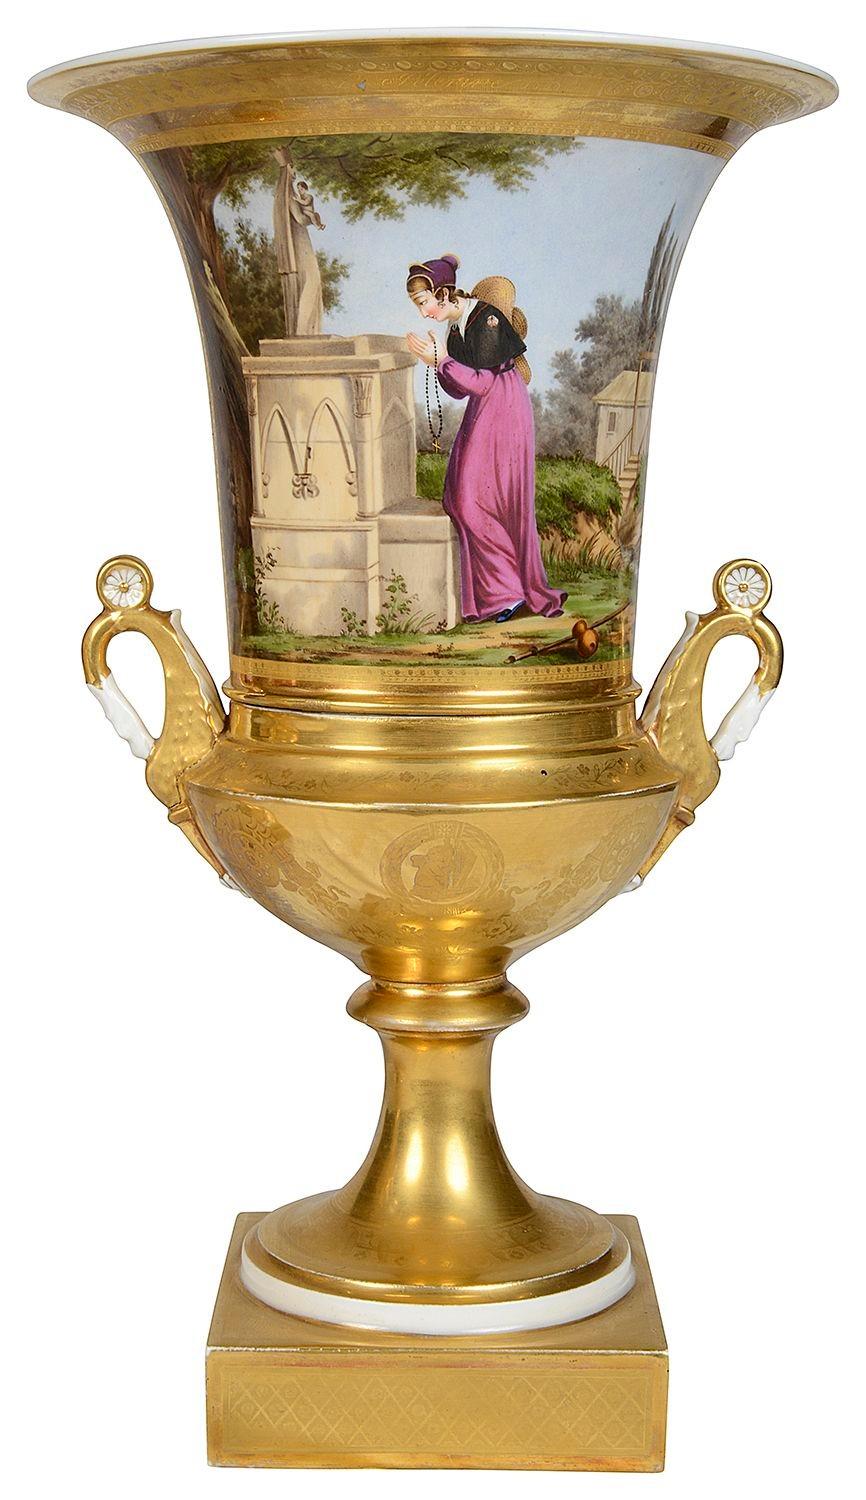 Ein feines Paar französischer Pariser Porzellan-Urnen mit zwei Henkeln aus dem späten 19. Sie zeigen jeweils klassische handgemalte Szenen einer betenden Jungfrau und eines Musikers. Oben und unten von einem wunderschön vergoldeten Boden umgeben.
